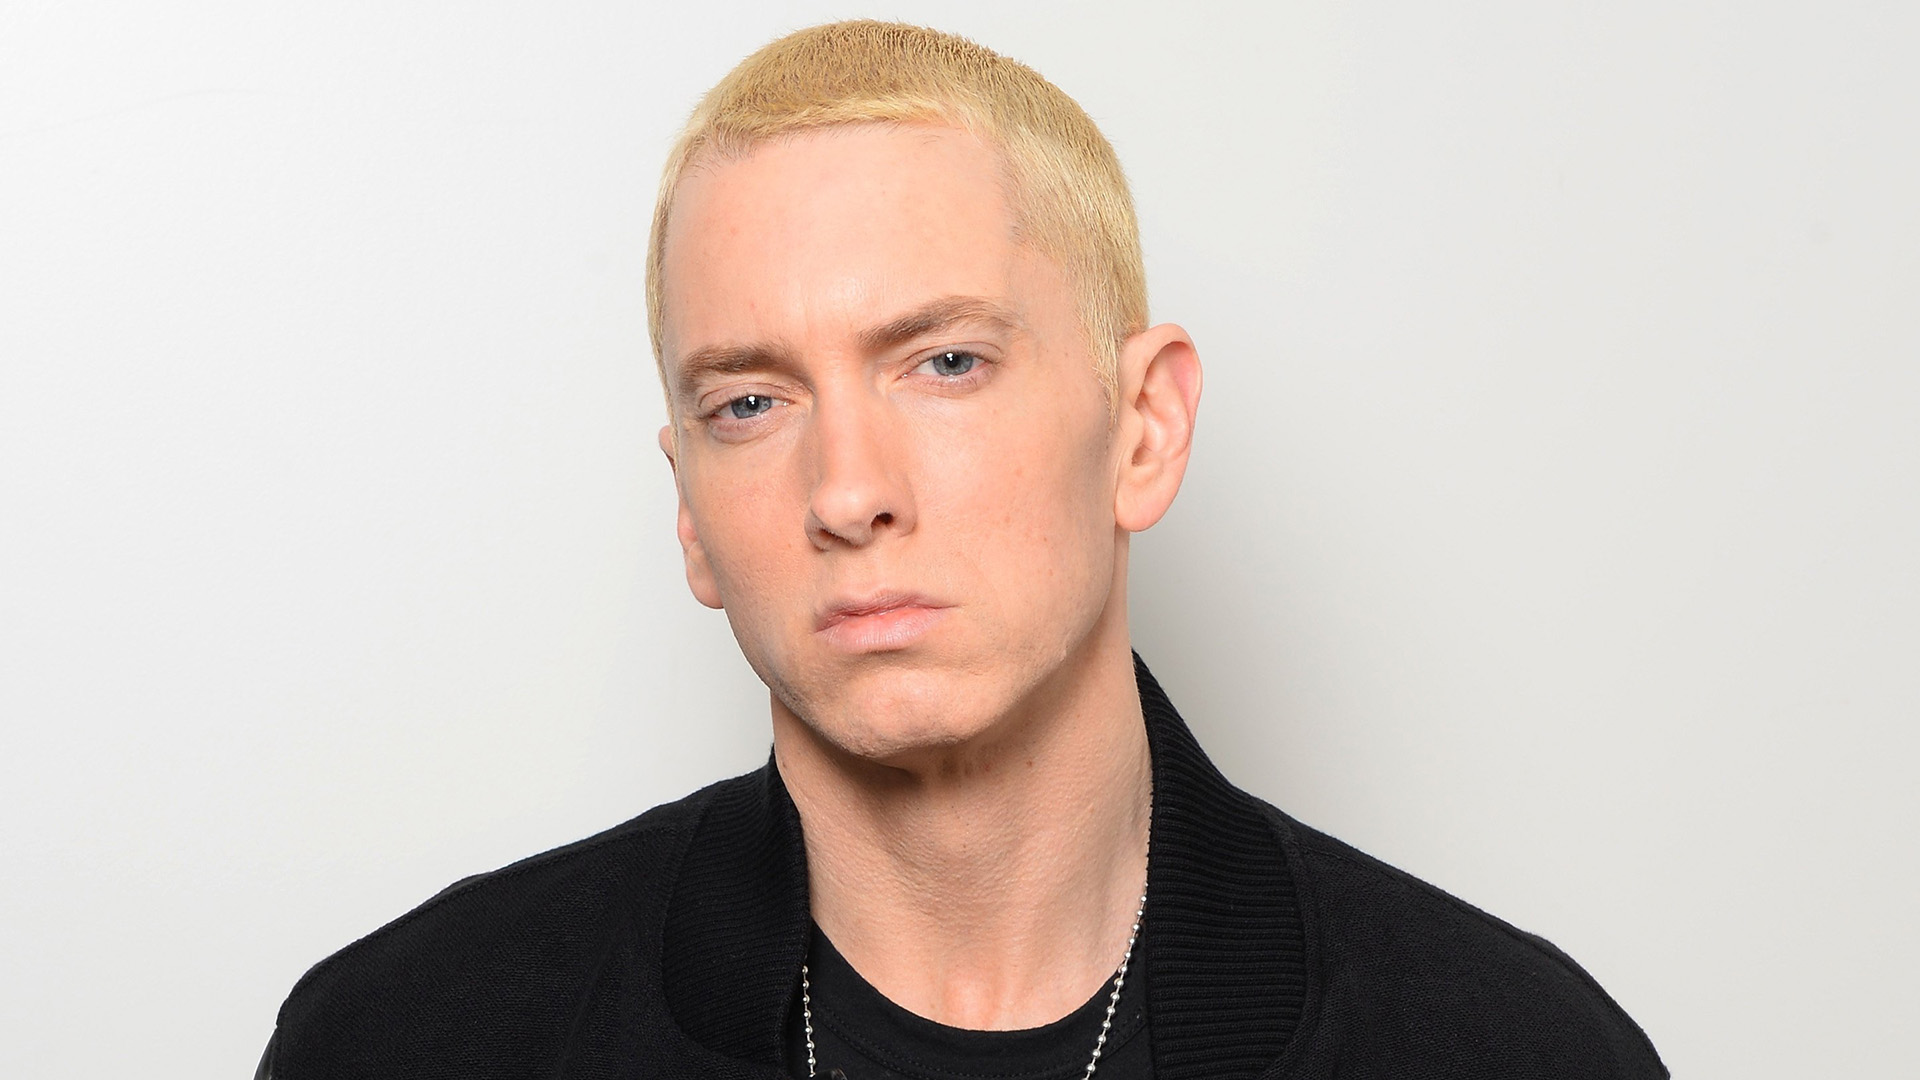 La policía subió fotos de un ladrón buscado muy parecido a Eminem